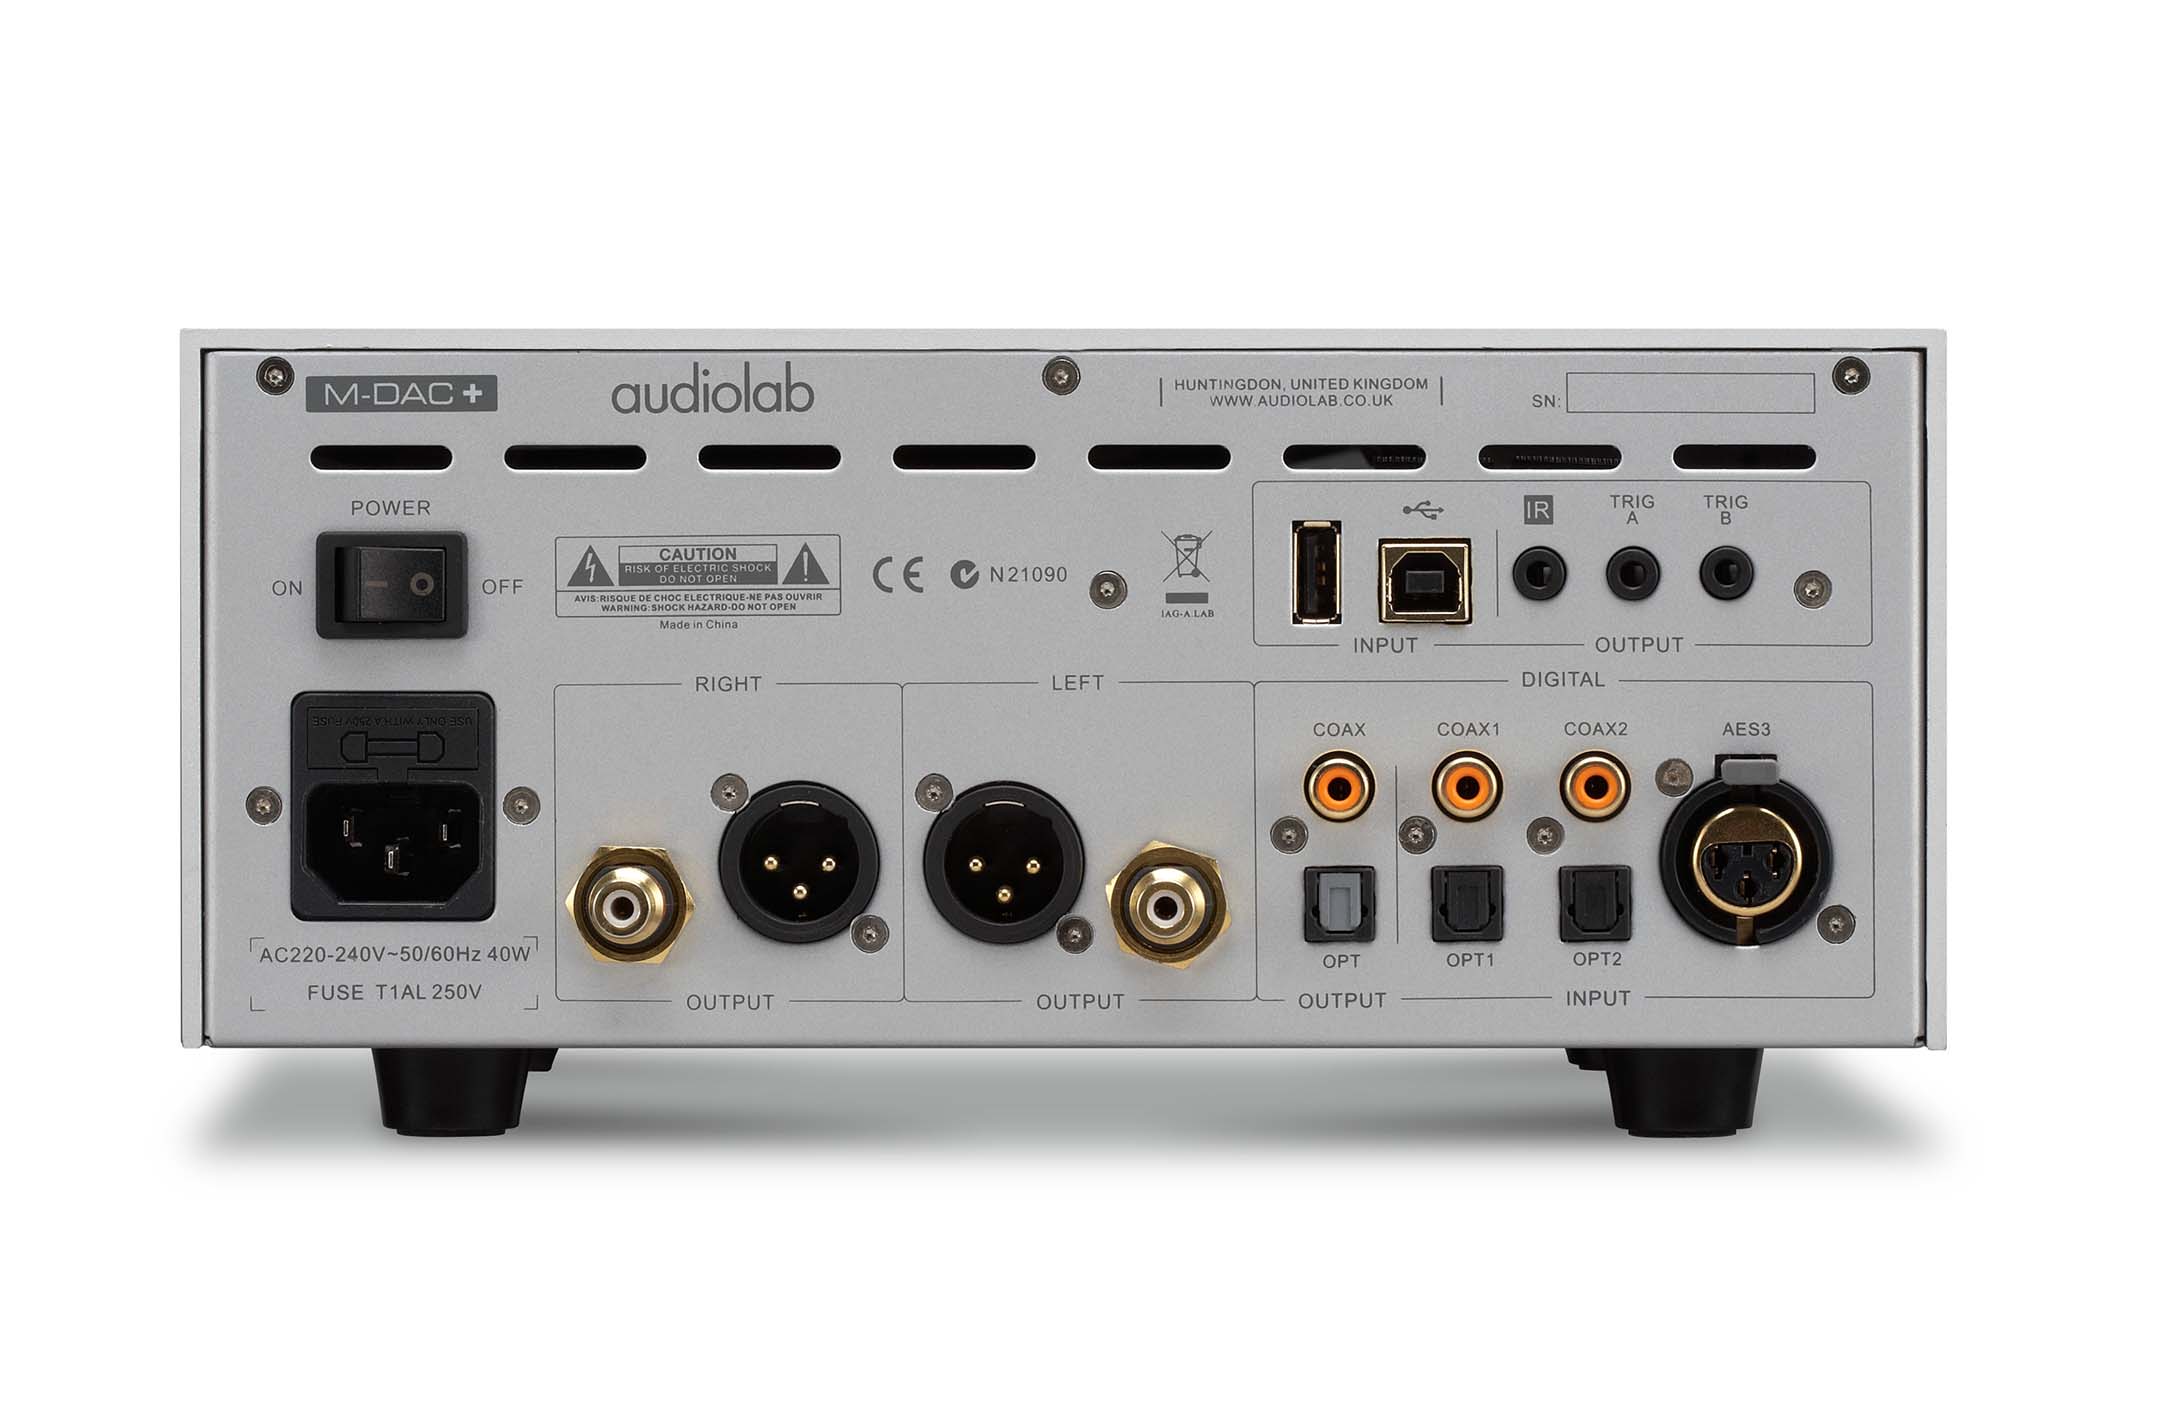 M-DAC+ (plus) - Audiolab